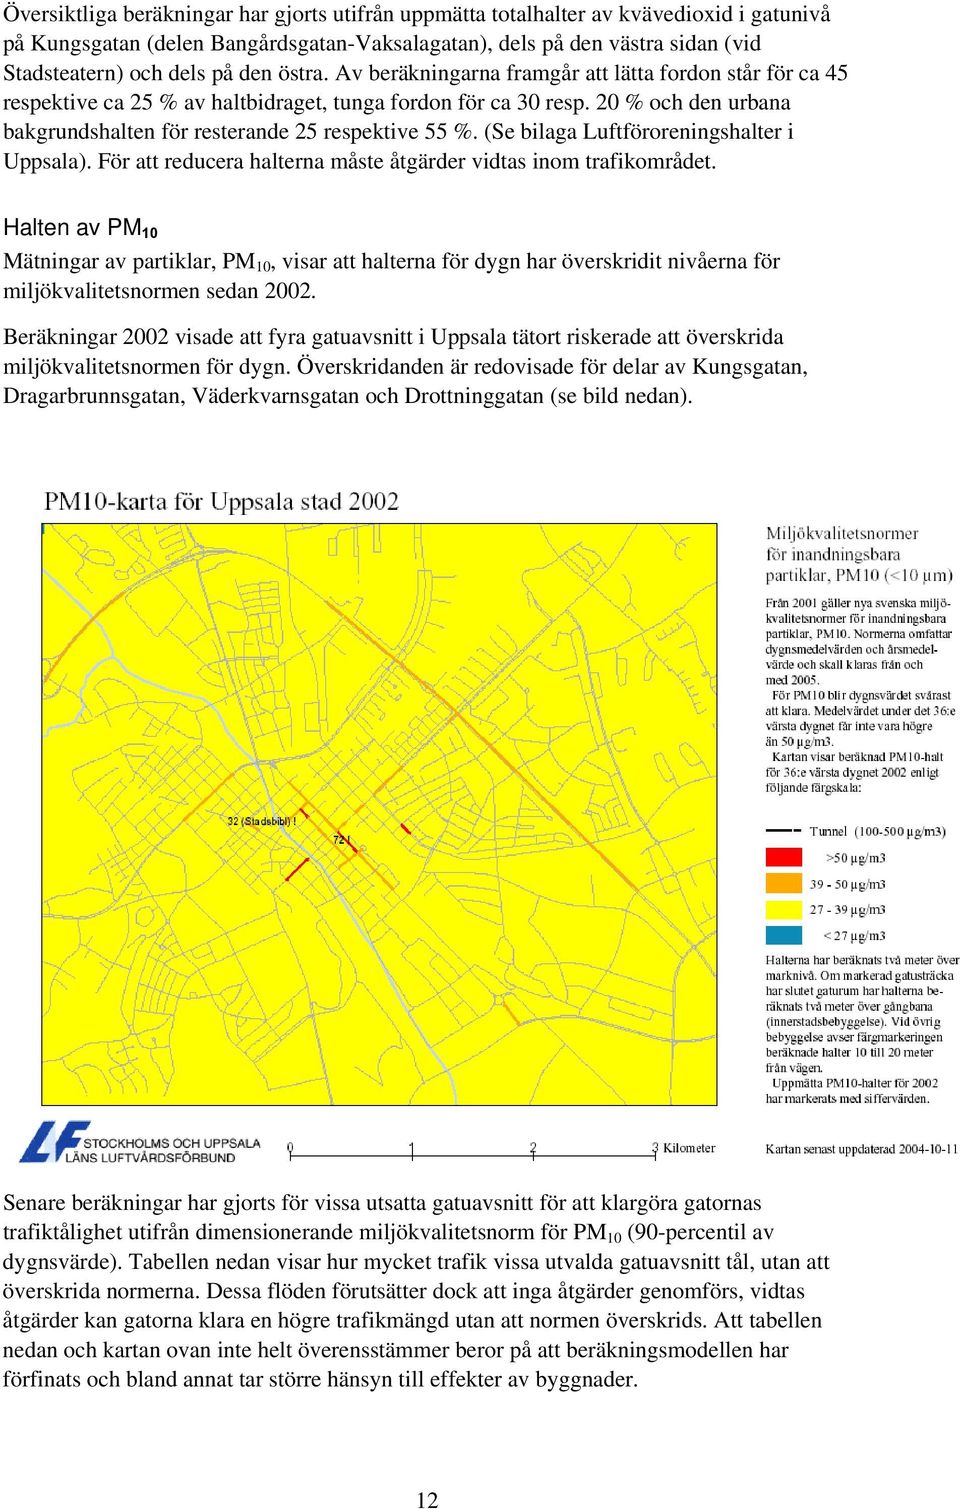 20 % och den urbana bakgrundshalten för resterande 25 respektive 55 %. (Se bilaga Luftföroreningshalter i Uppsala). För att reducera halterna måste åtgärder vidtas inom trafikområdet.